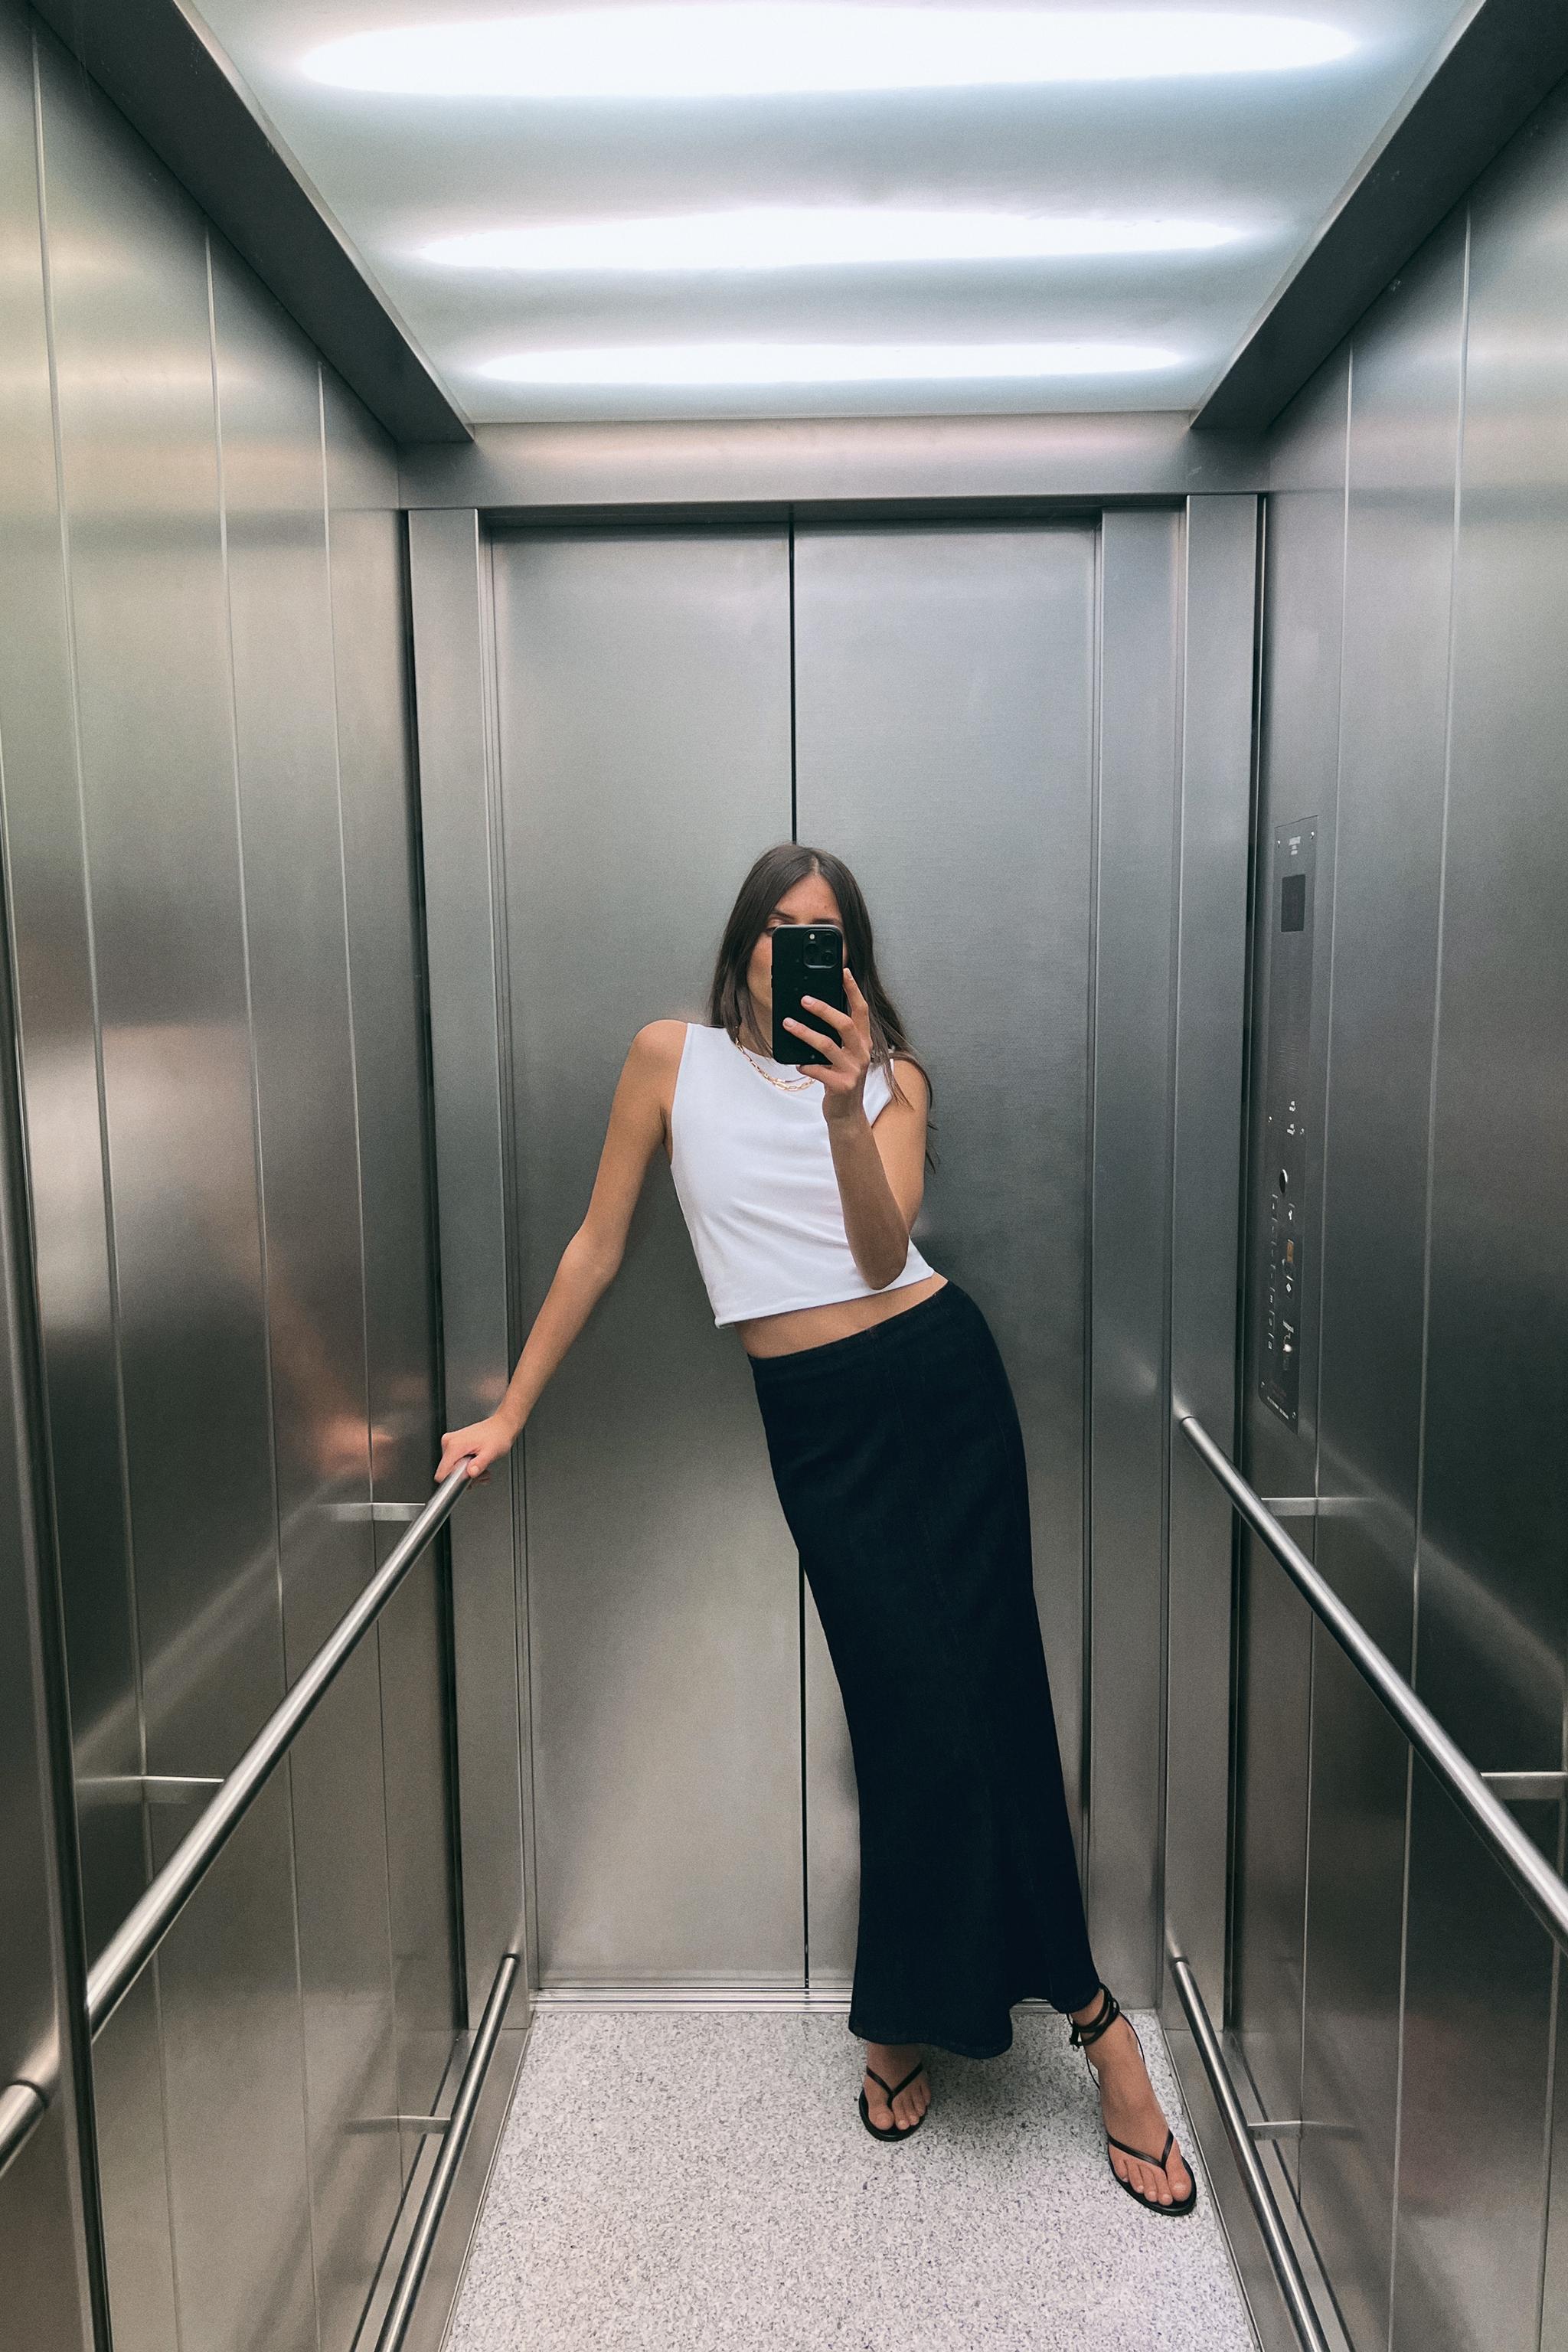 Zara Button Up White Tube Top, Women's Fashion, Tops, Sleeveless